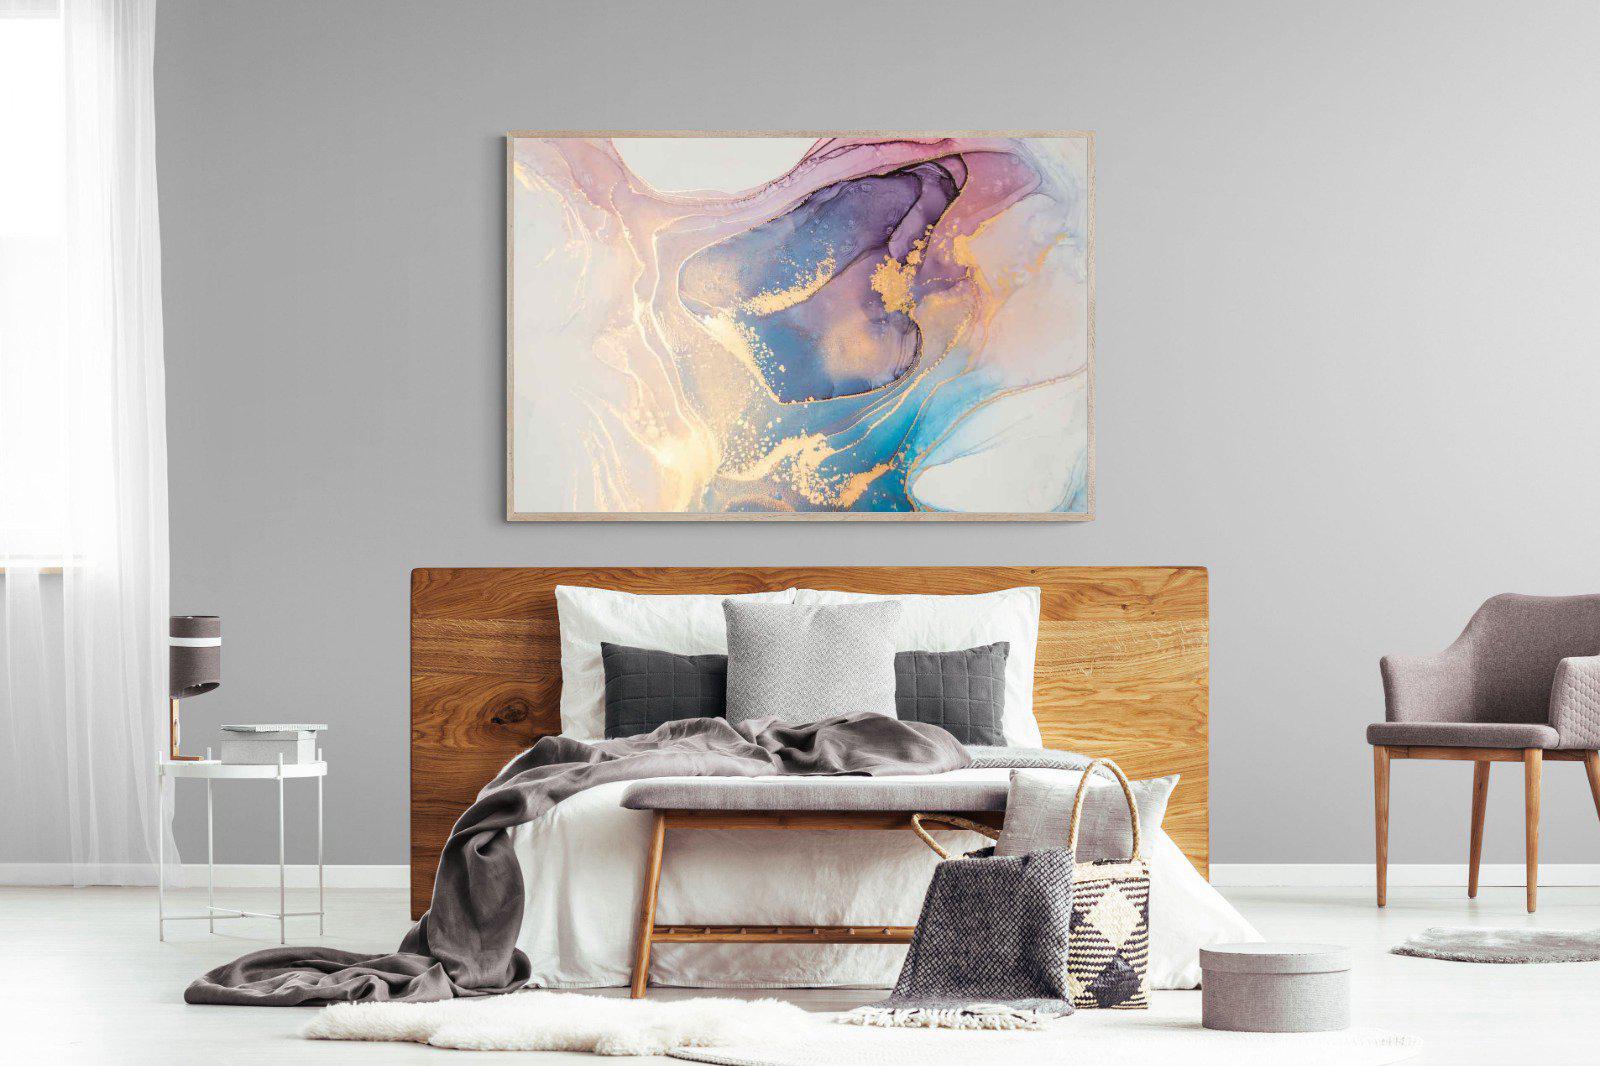 Blushing-Wall_Art-150 x 100cm-Mounted Canvas-Wood-Pixalot